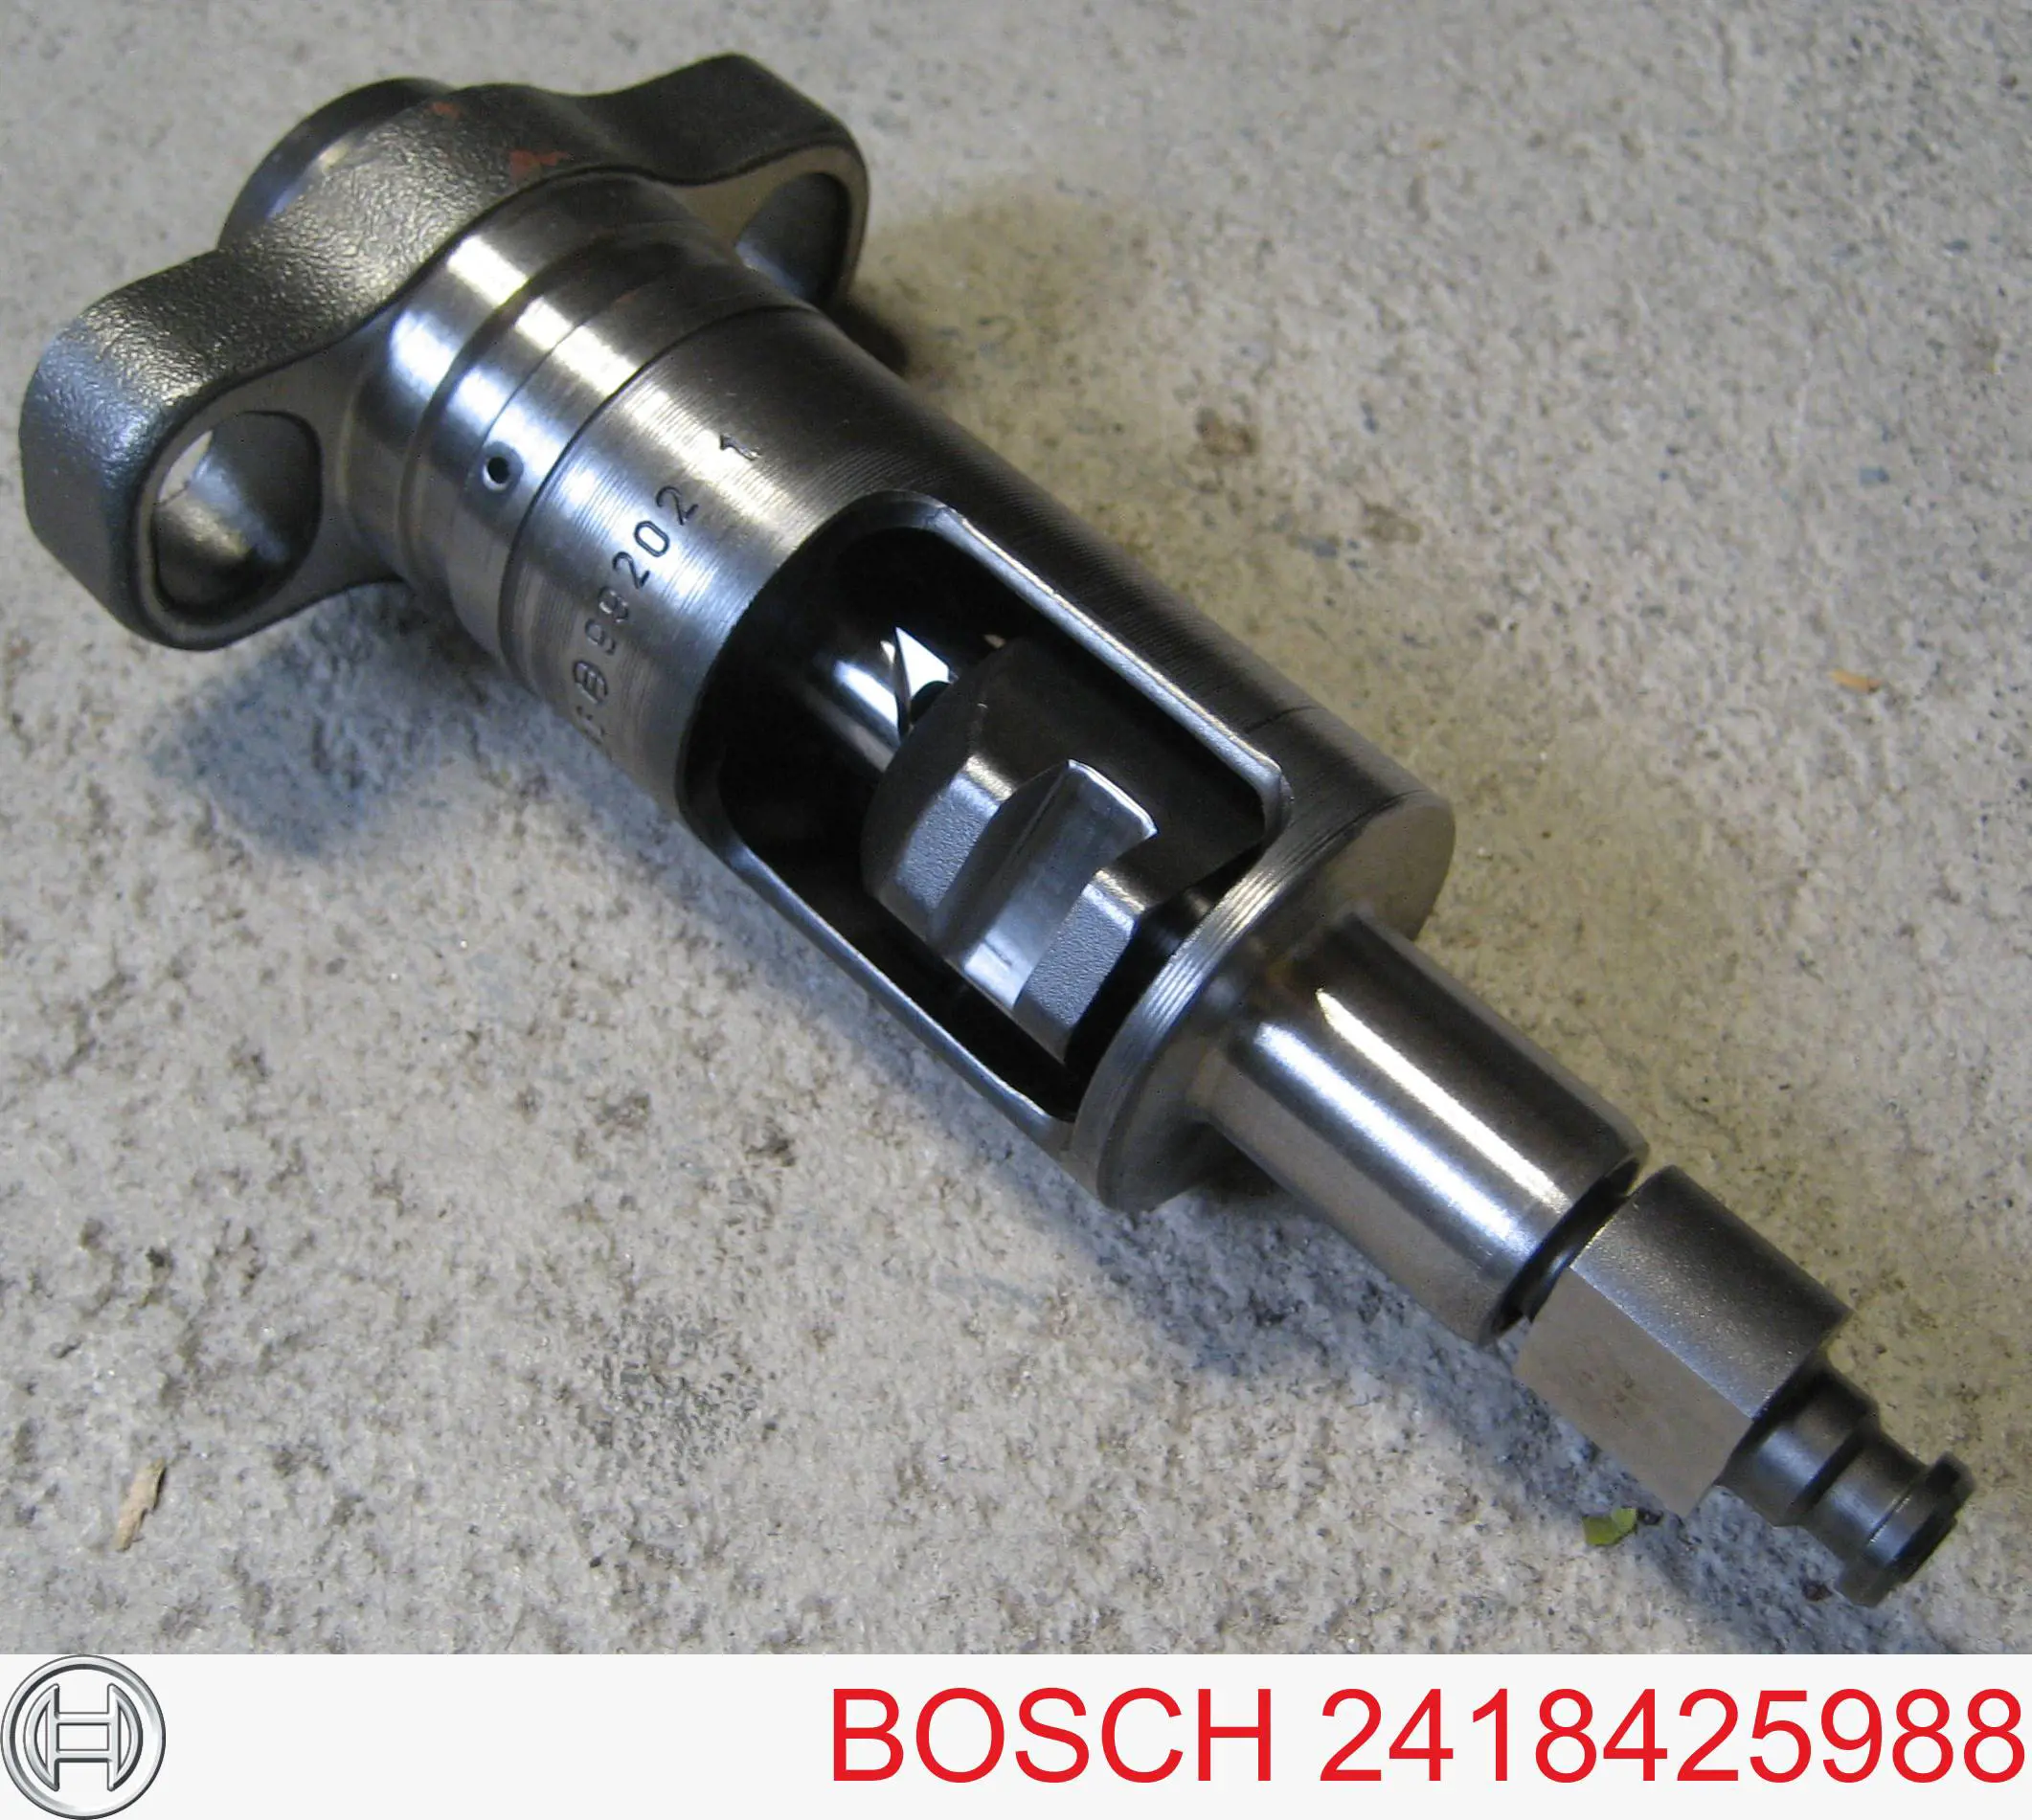 2418425988 Bosch 